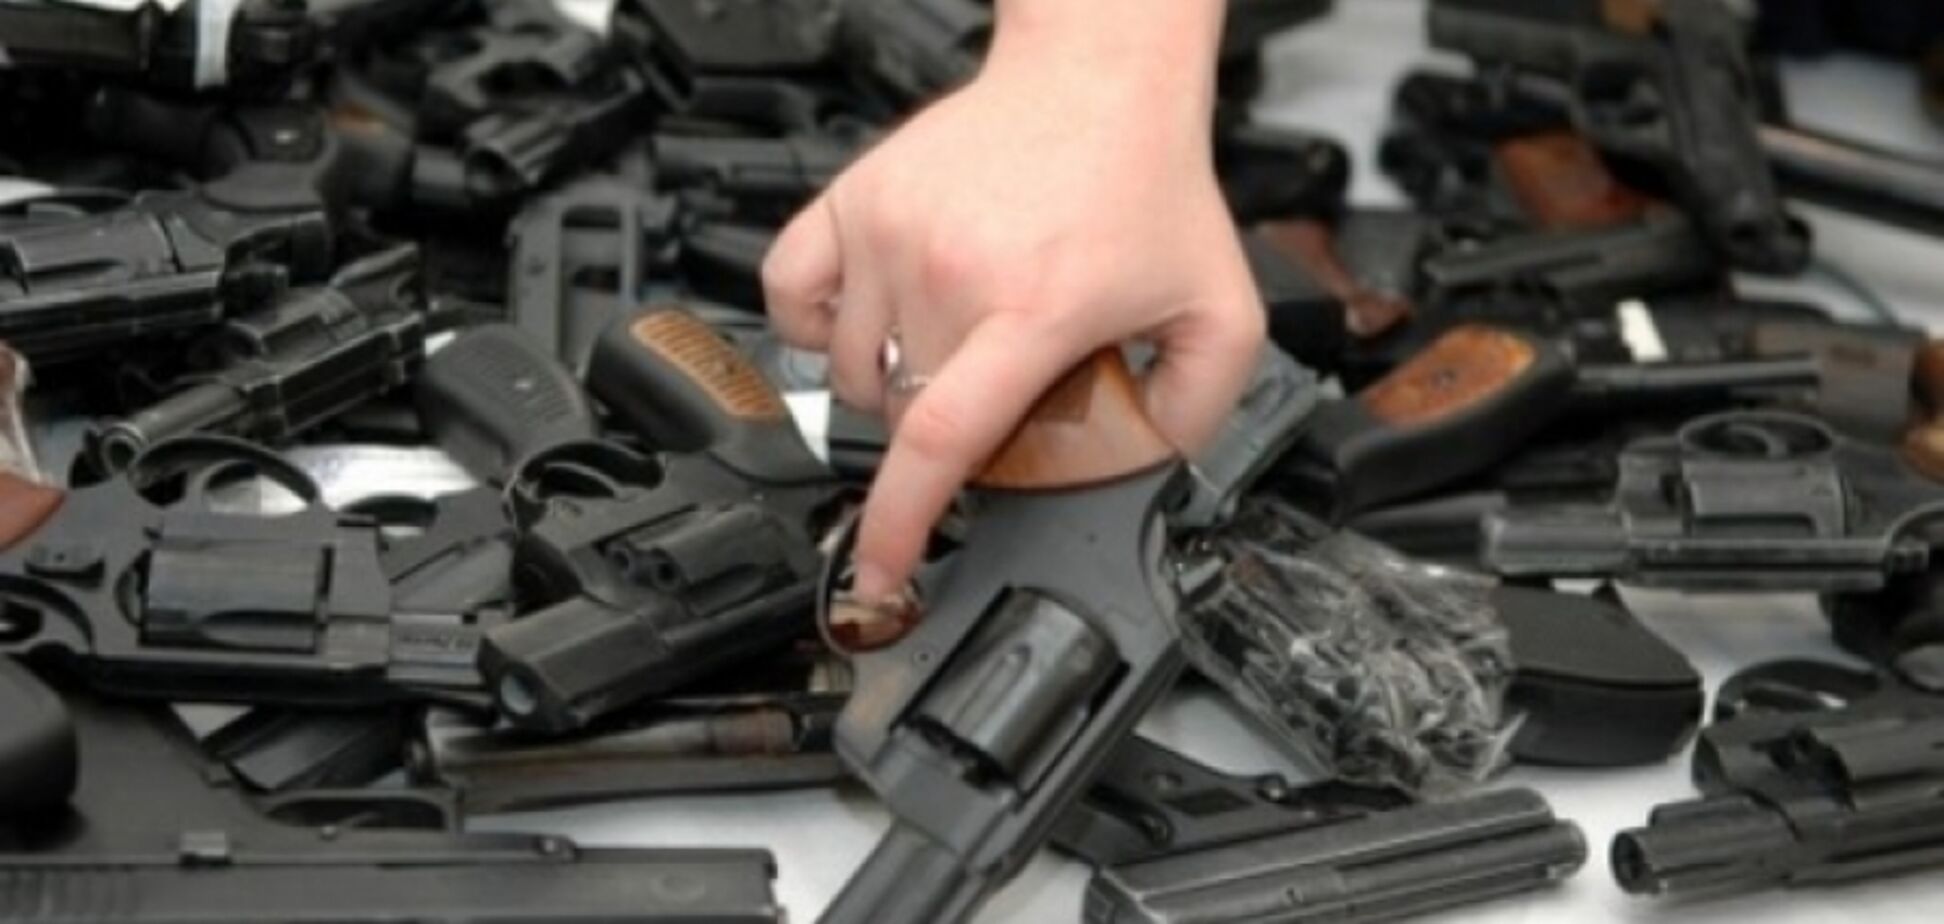 Это не убийство: адвокат раскрыл детали легализации оружия в Украине